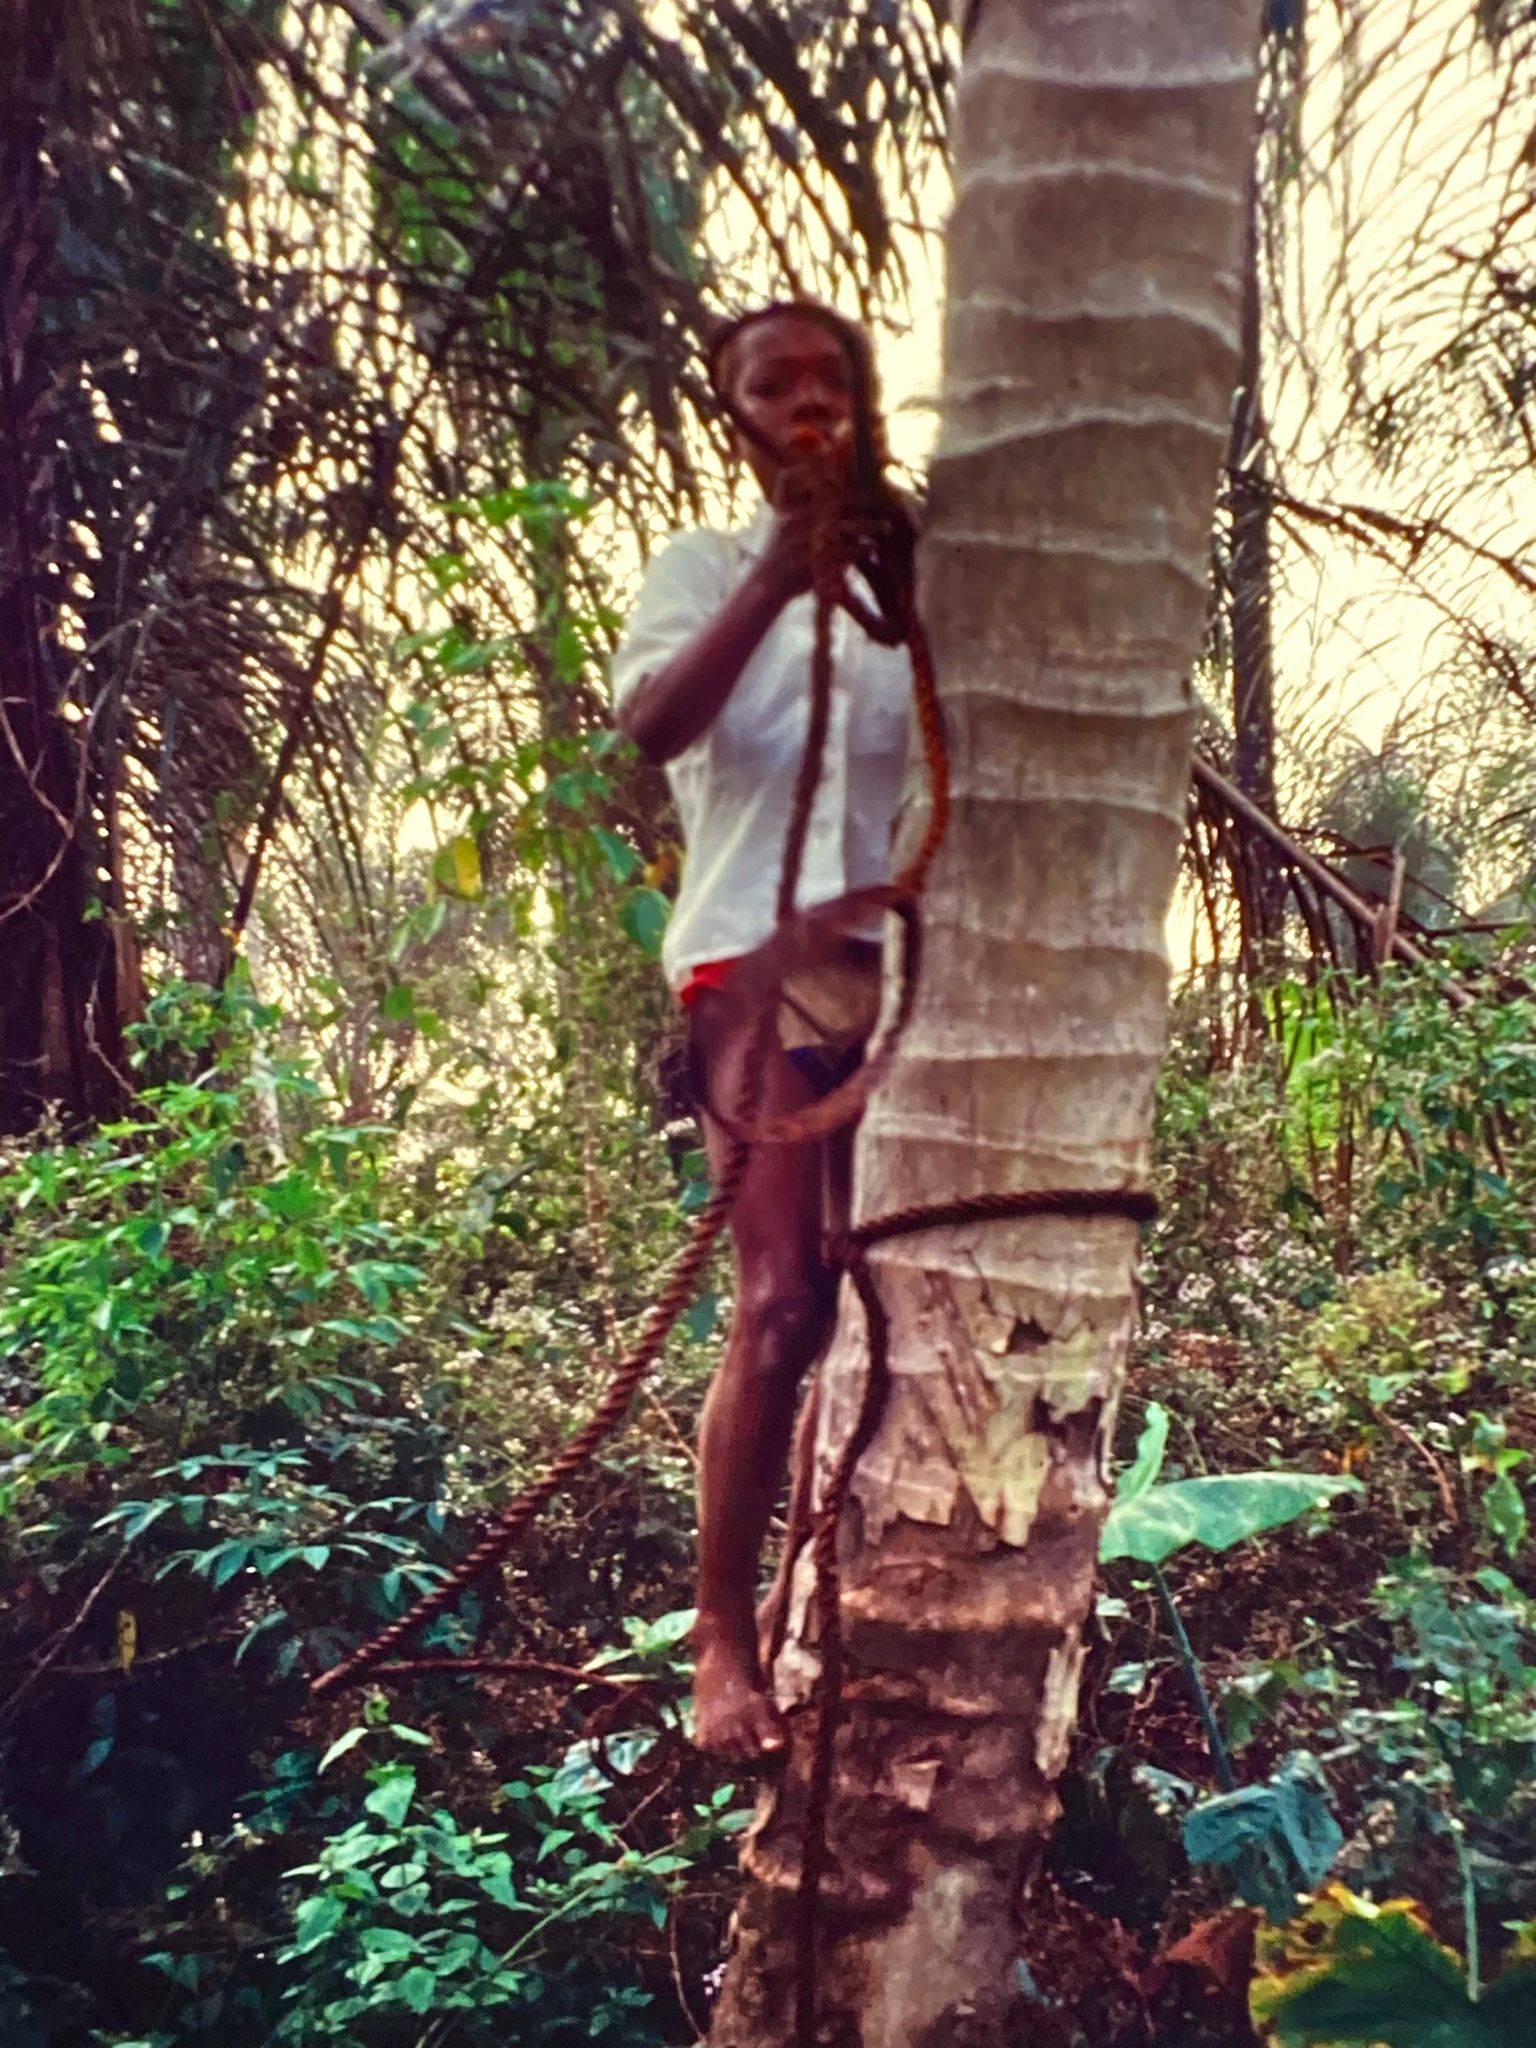 Mann mit einfachen Kletterwerkzeugen auf halber Höhe einer Palme, der dabei ist, reif gewordene Früchte zu schneiden.